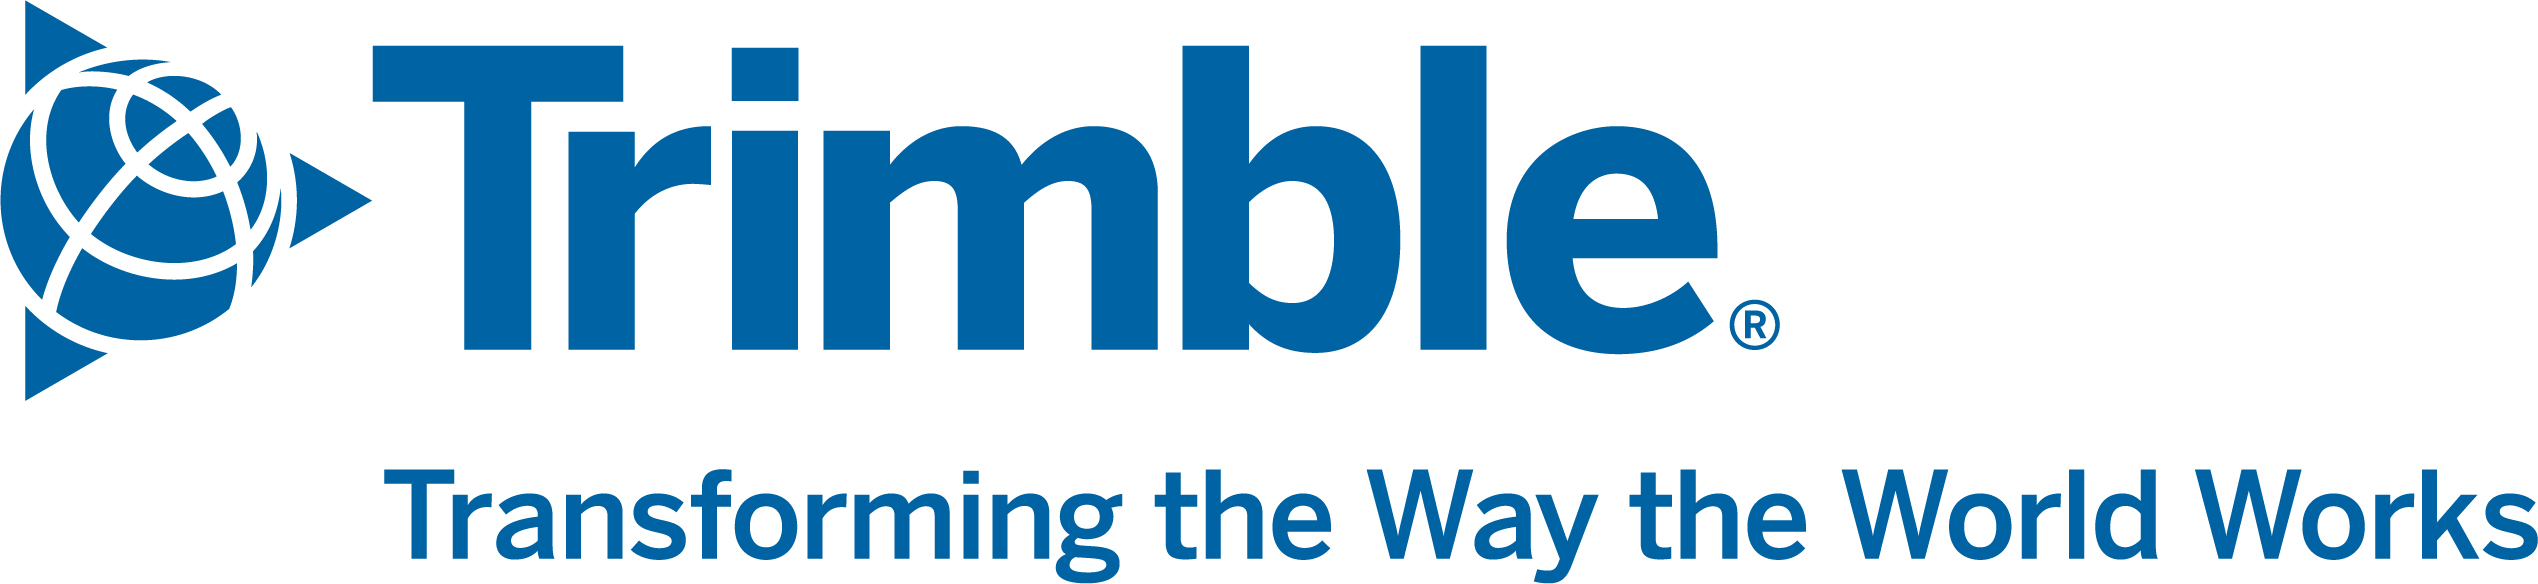 Trimble-Logo-with-Tagline-Horiz-RGB-Blue.jpg